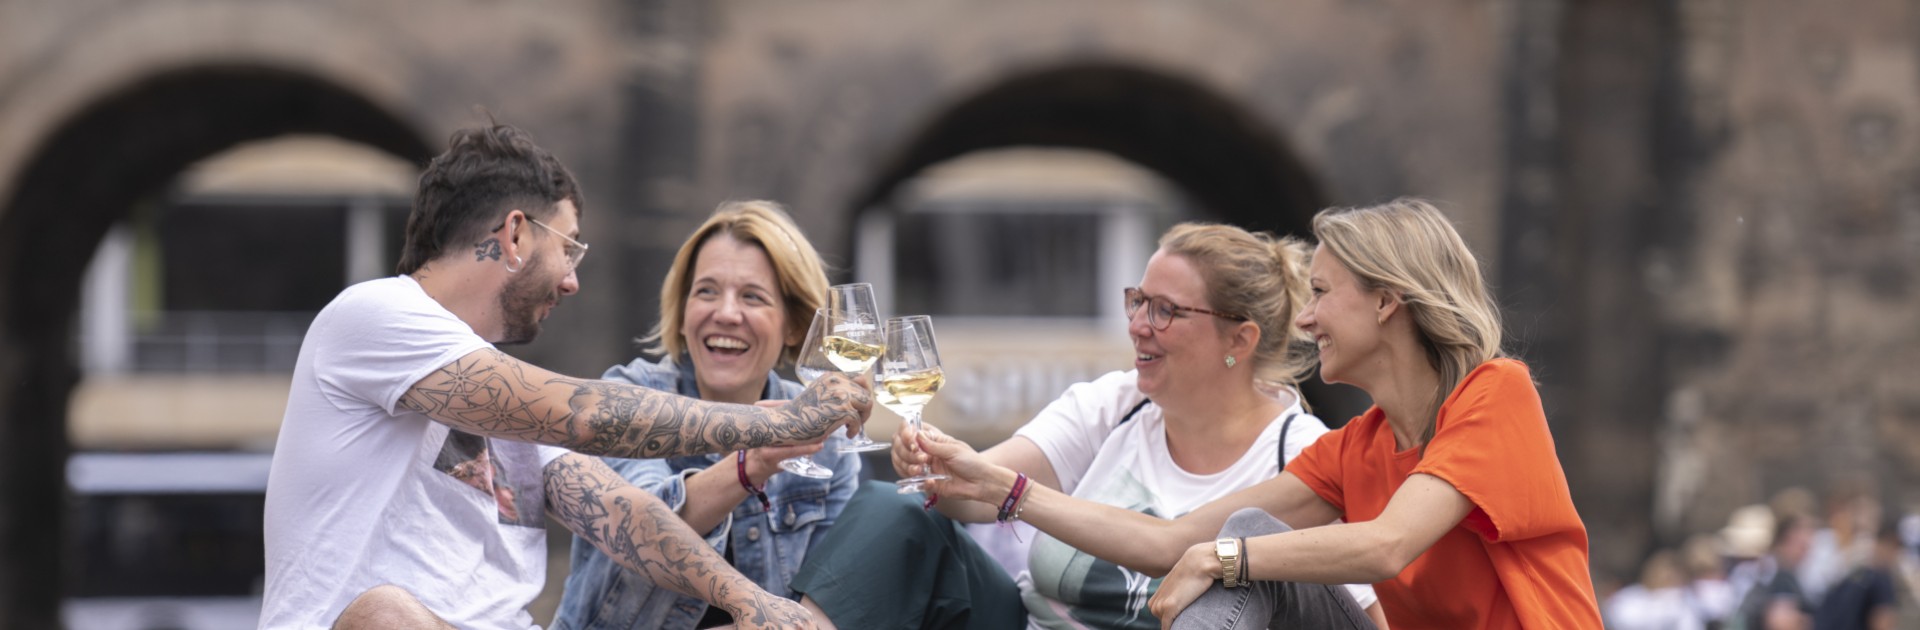 Vier Personen trinken Wein vor der Porta Nigra in Trier - Wein-Rundgang Moselwein trifft Geschichte - © Victor Beusch / Trier Tourismus und Marketing GmbH